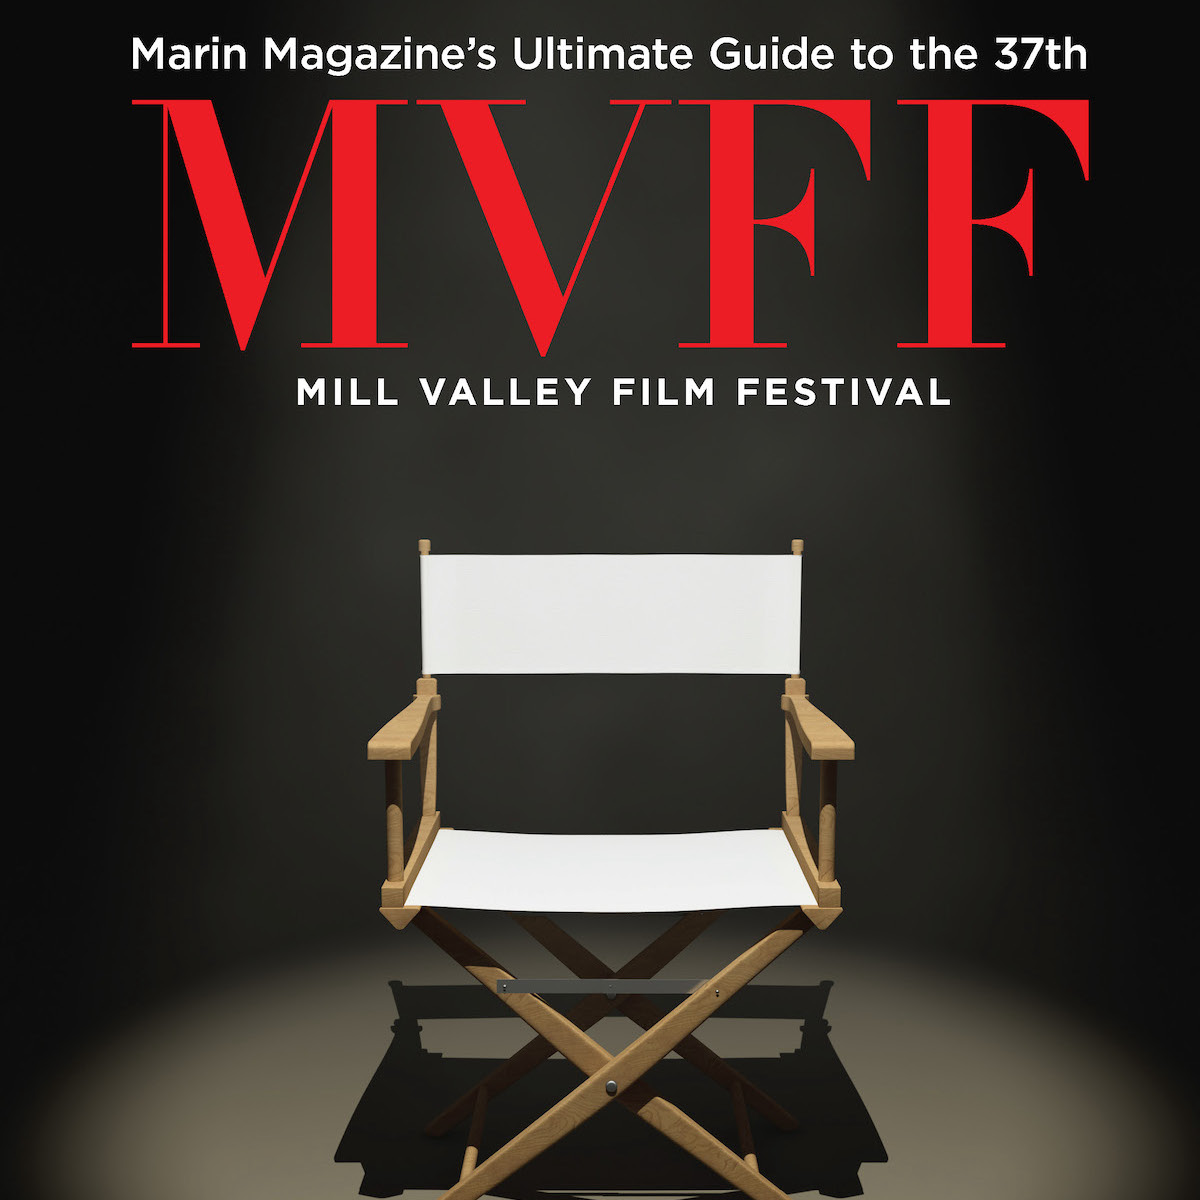 Mill Valley Film Festival 2014